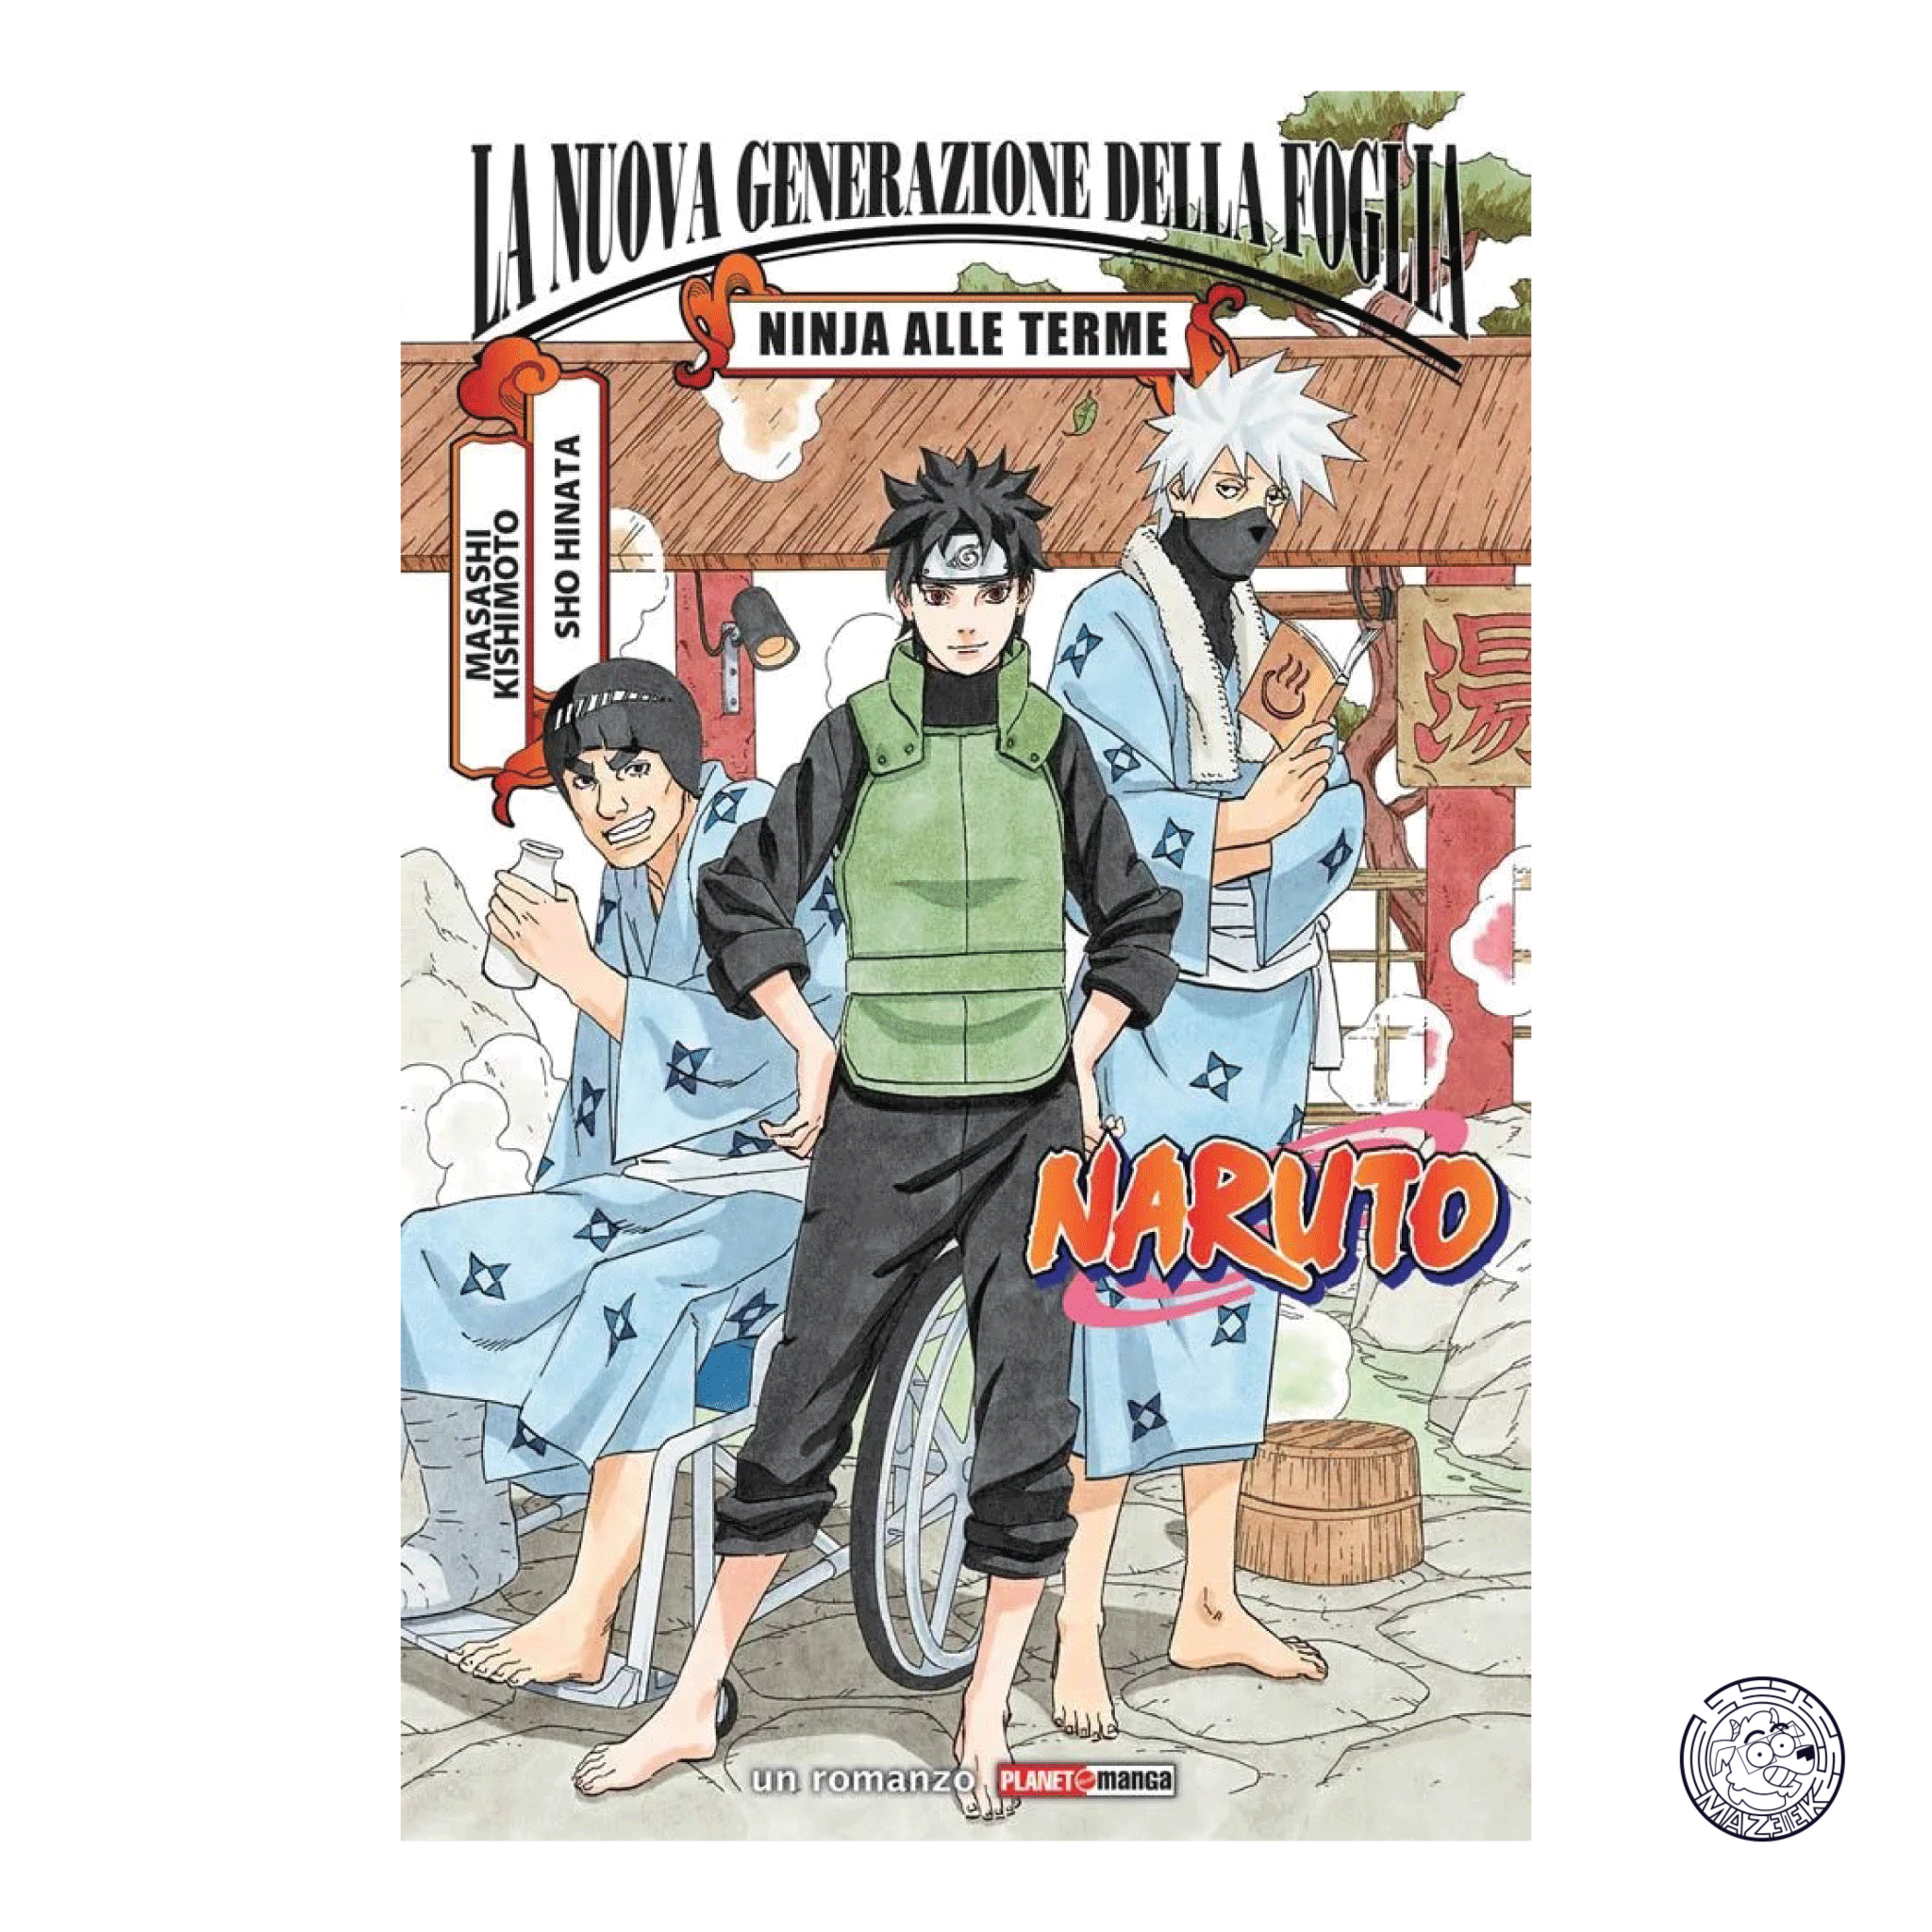 Naruto: La Nuova Generazione Della Foglia, Ninja Alle Terme - Romanzo